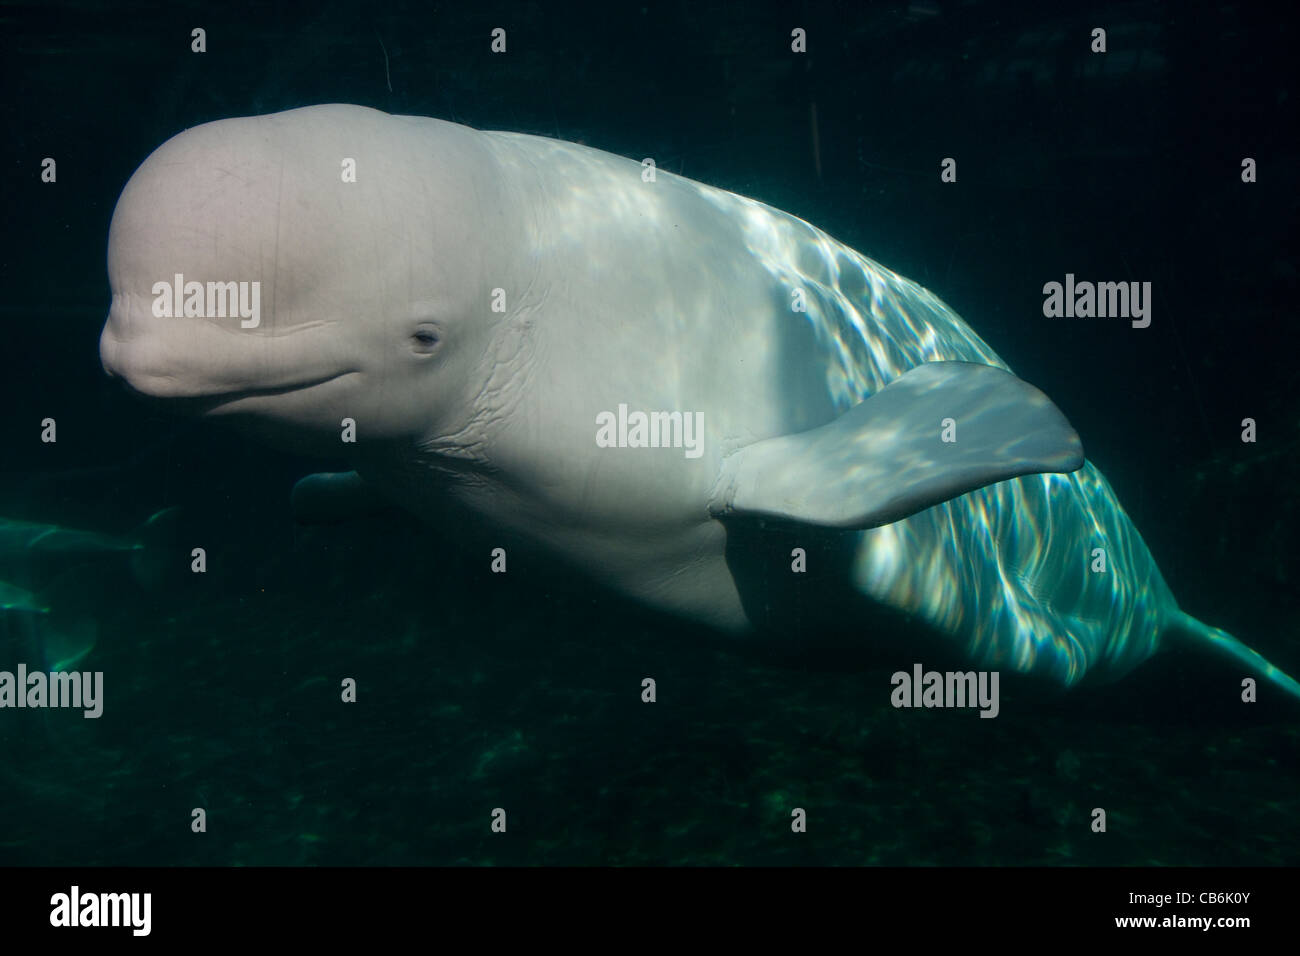 Connecticut: Mystic / Mystic Aquarium - Beluga Whale Stock Photo